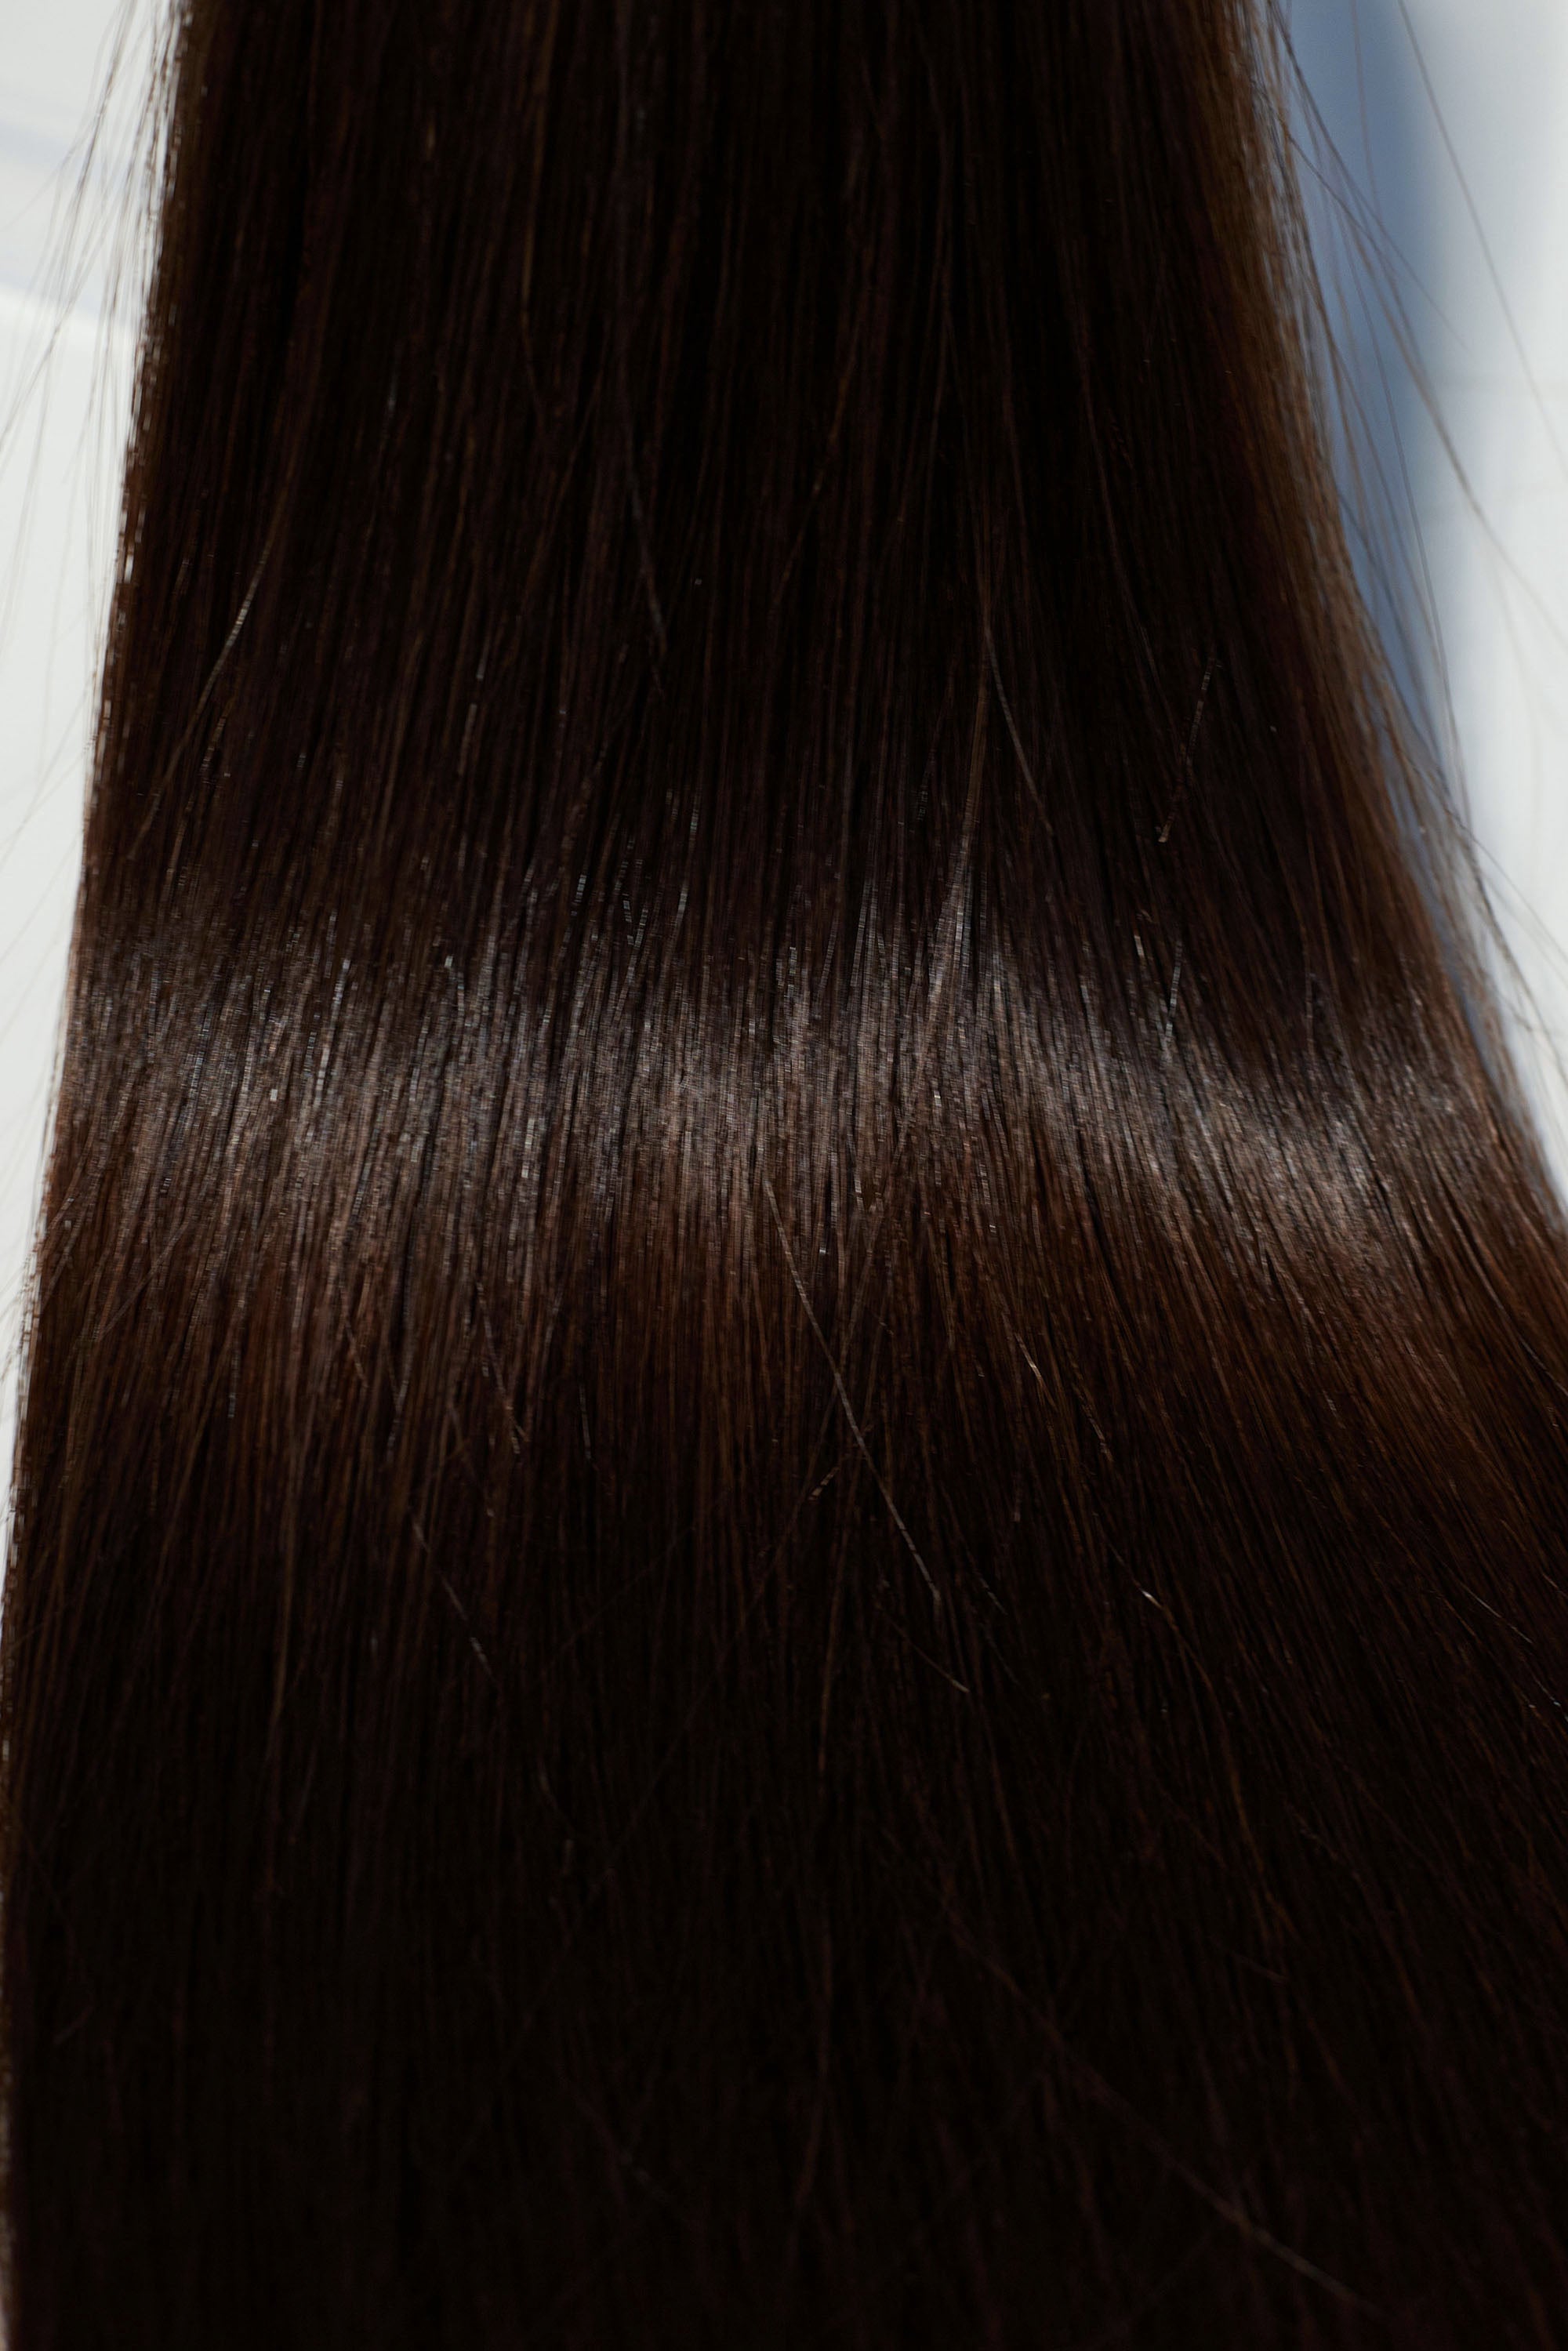 Behair professional Keratin Tip "Premium" 28" (70cm) Natural Straight Dark Coffee Brown #2 - 25g (1g each pcs) hair extensions